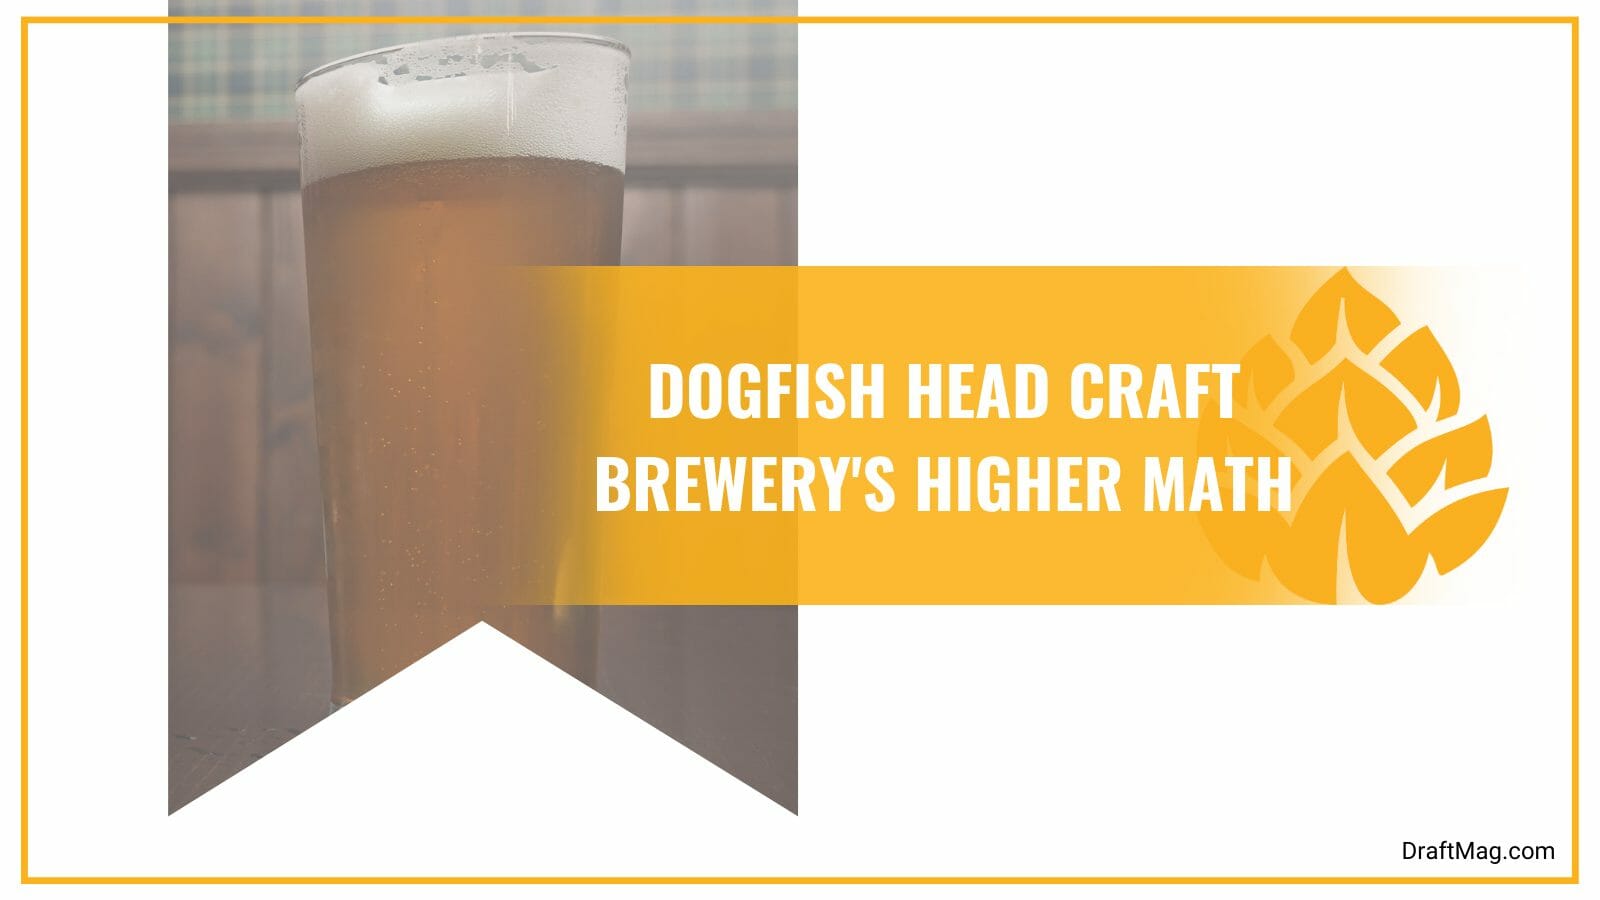 Craft brewery higher math